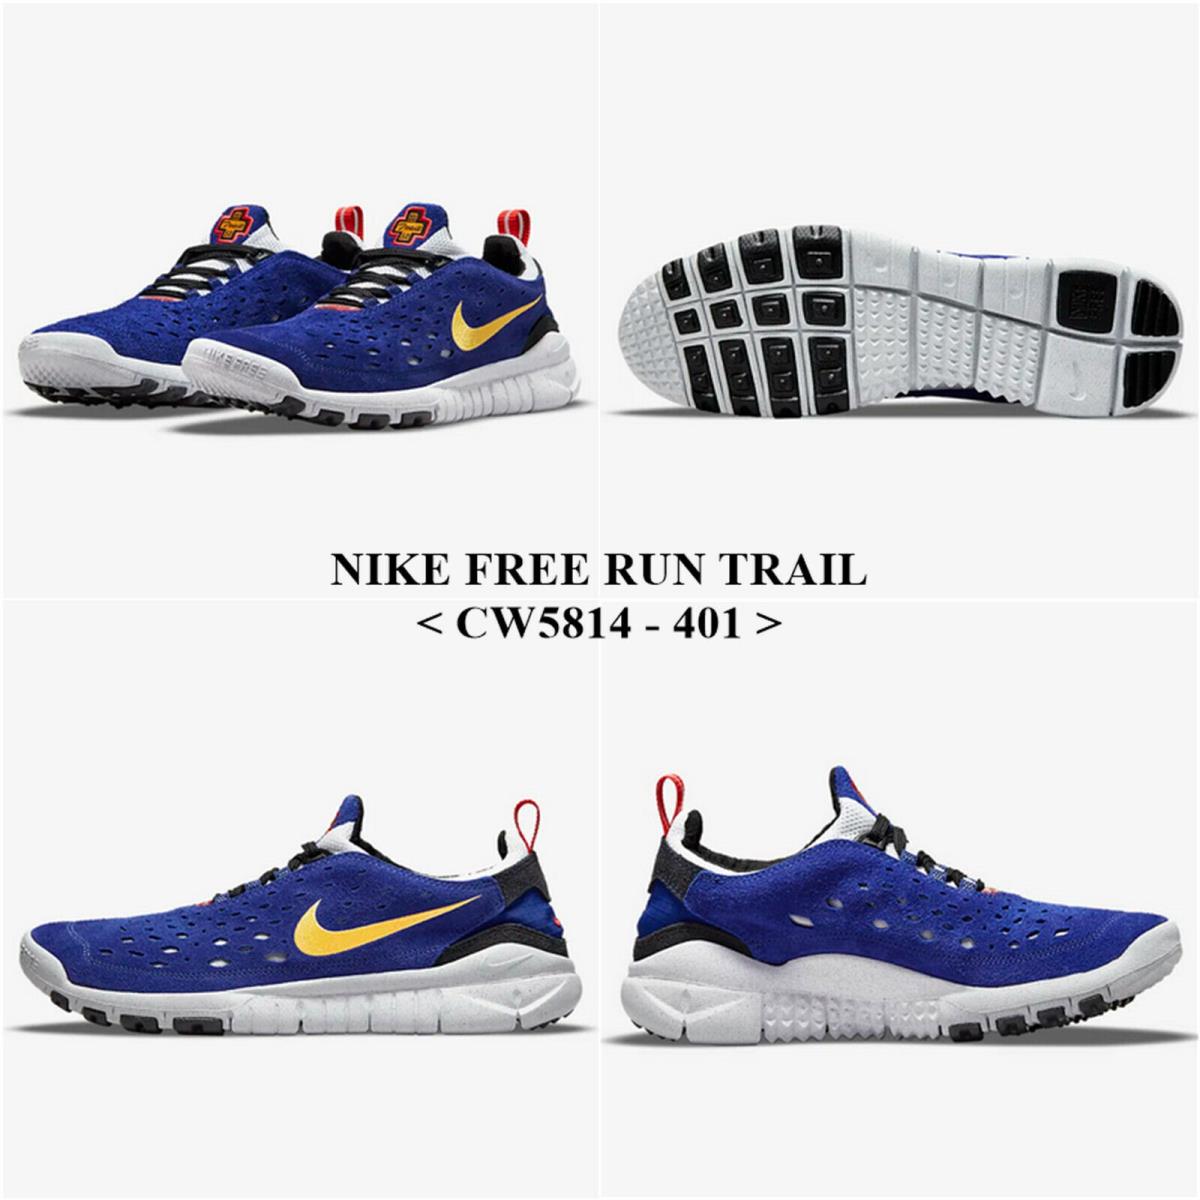 Nike Free Run Trail CW5814 - 401 .men`s Running Shoe . NO Lid